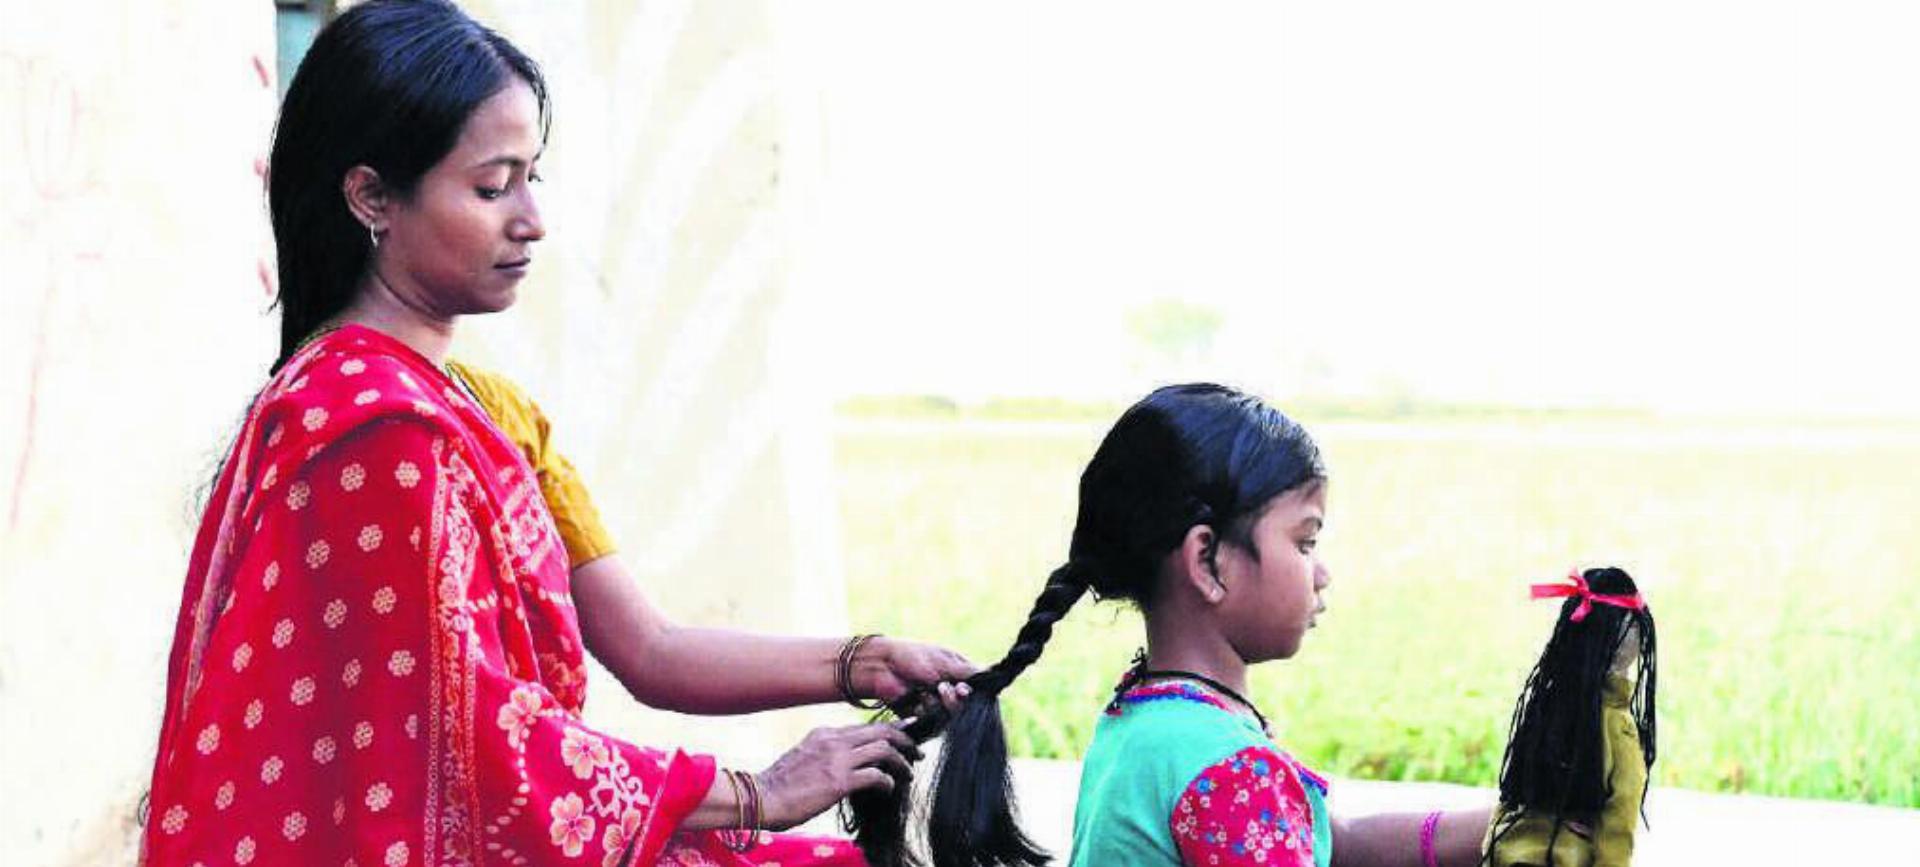 Die Inderin Smita will im Film «La tresse» für ihre Tochter ein besseres Leben. Bild: zg